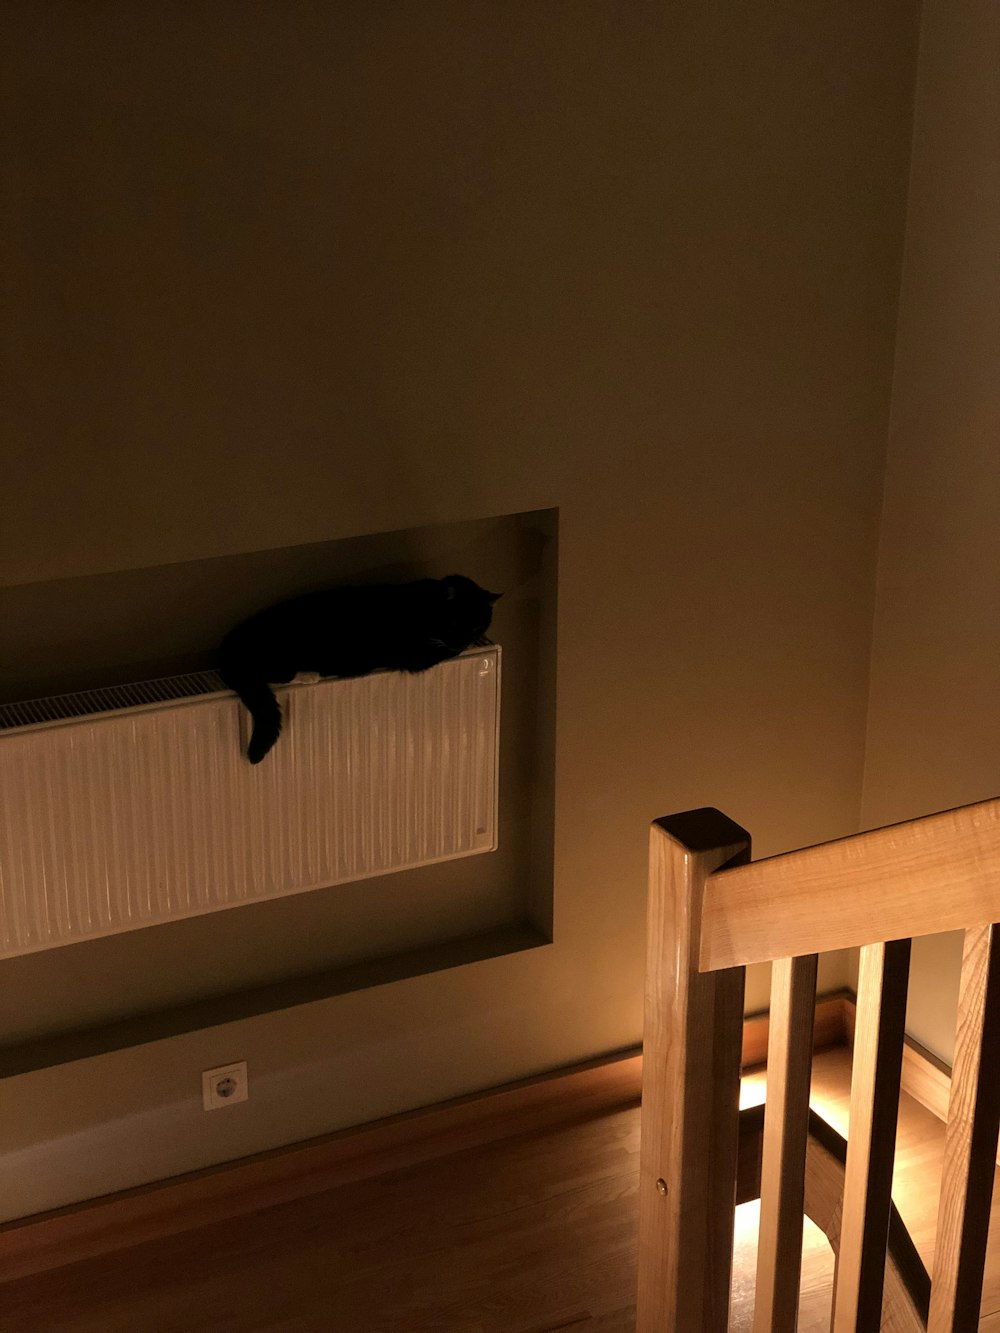 un chat allongé sur un radiateur dans une pièce